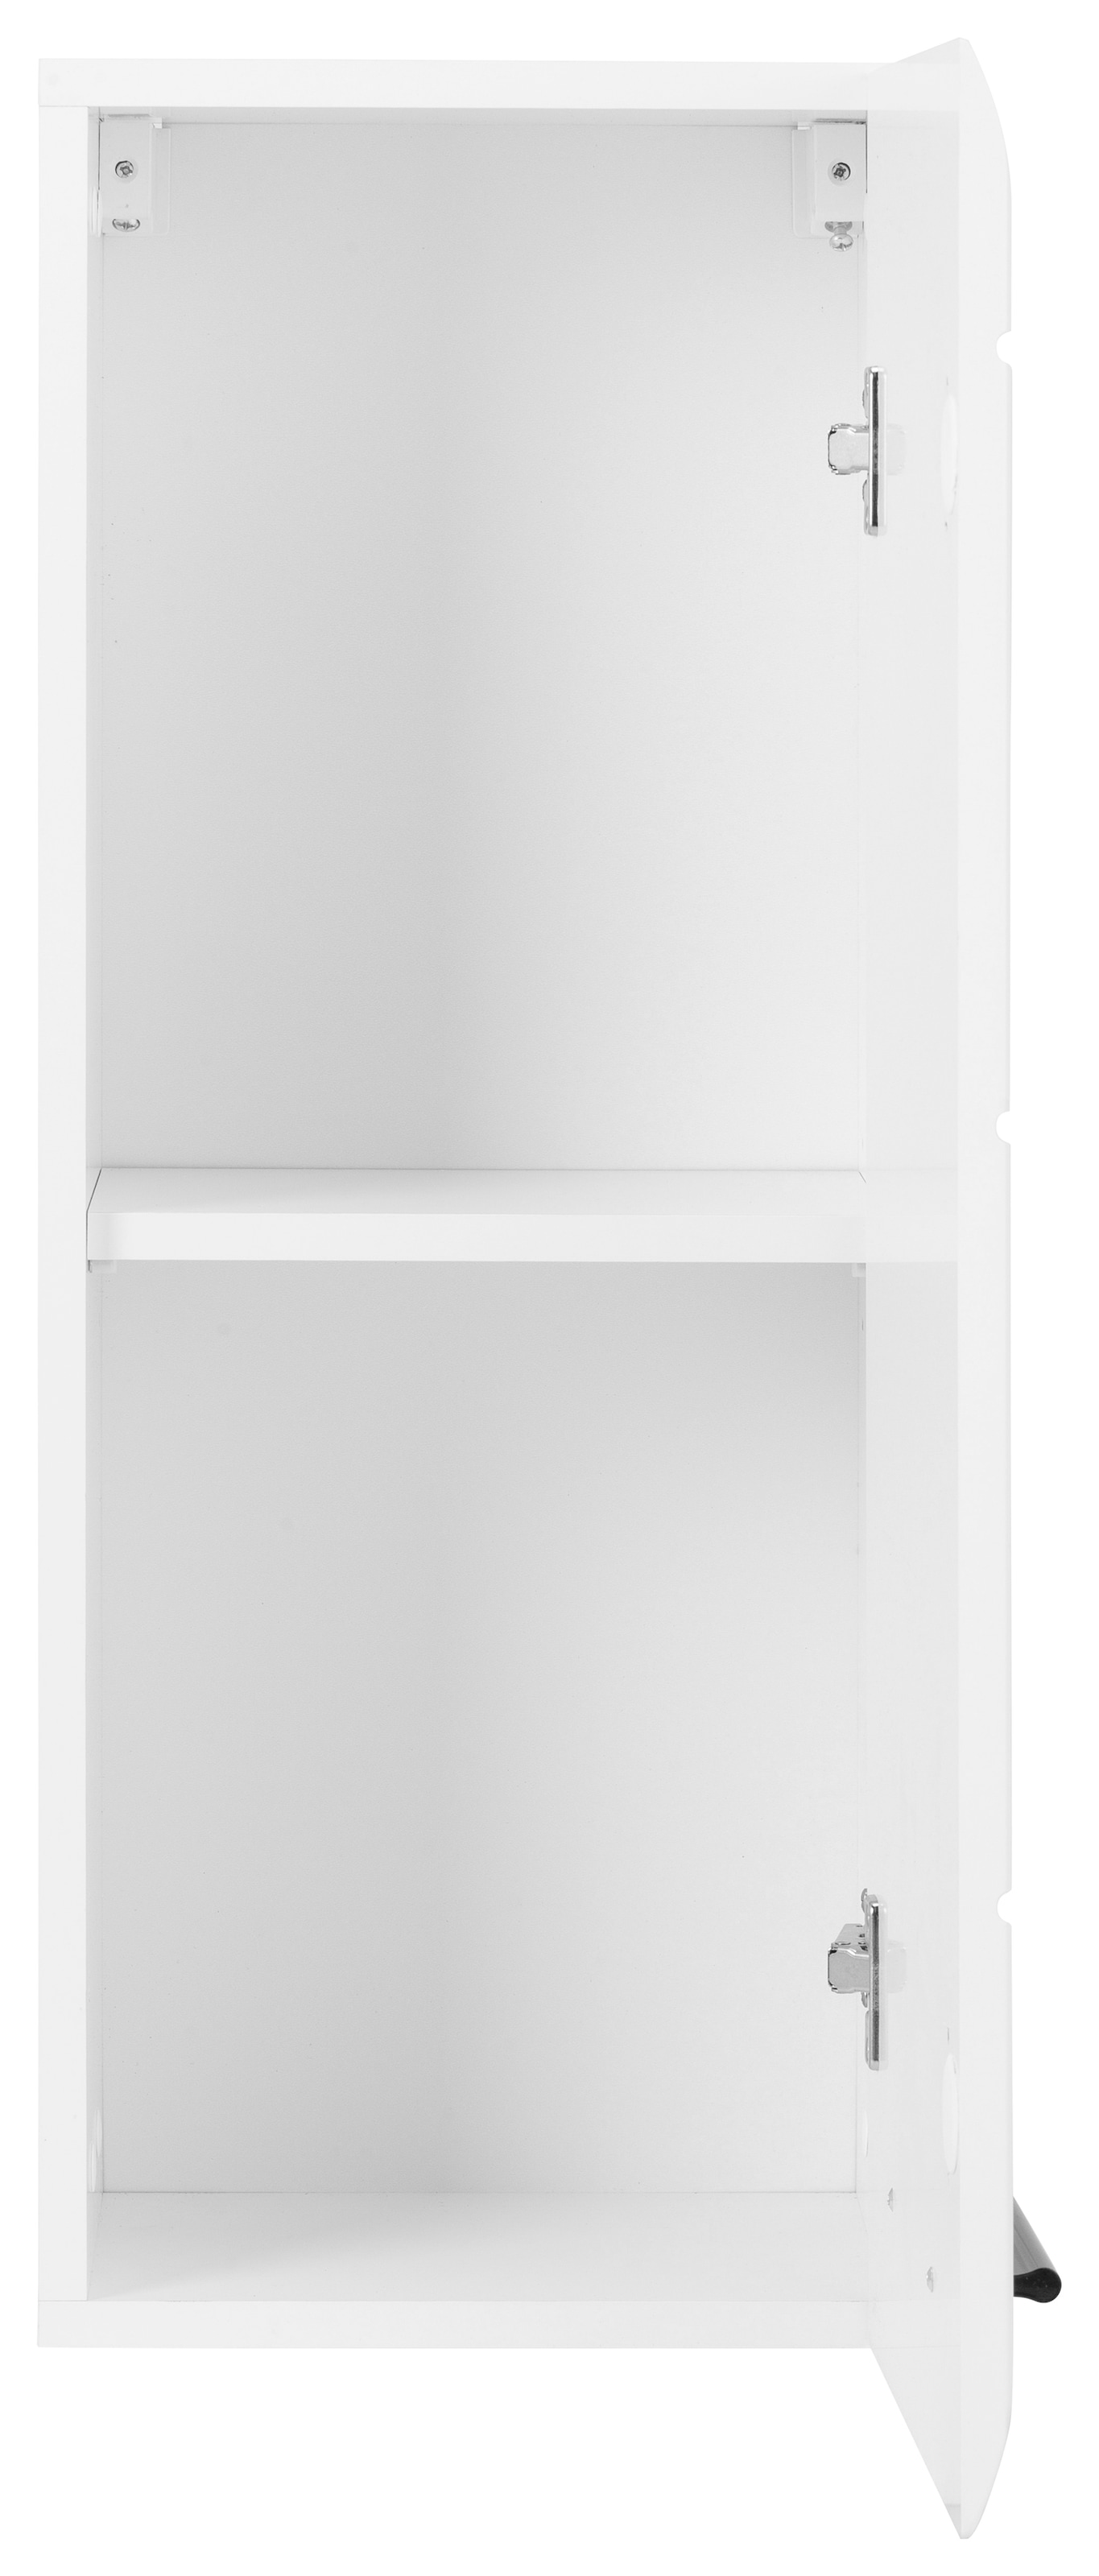 INOSIGN Hängeschrank »Sovana«, Höhe 77 cm, Badezimmerschrank mit Fronten in Hochglanz- oder Holzoptik